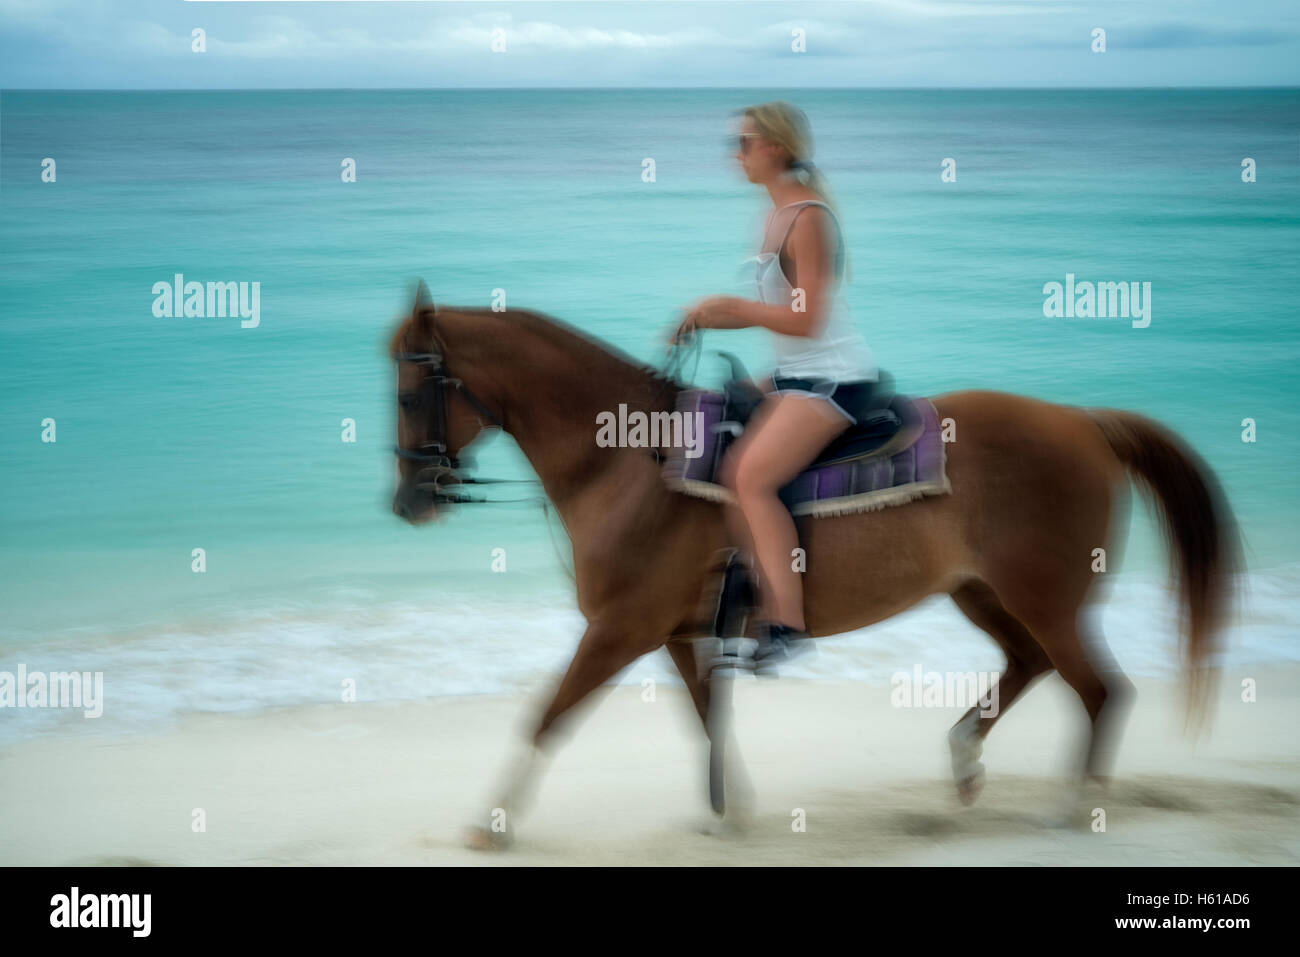 Frau galoppierenden Pferd am Ufer. Turks- und Caicosinseln. Providenciales Stockfoto